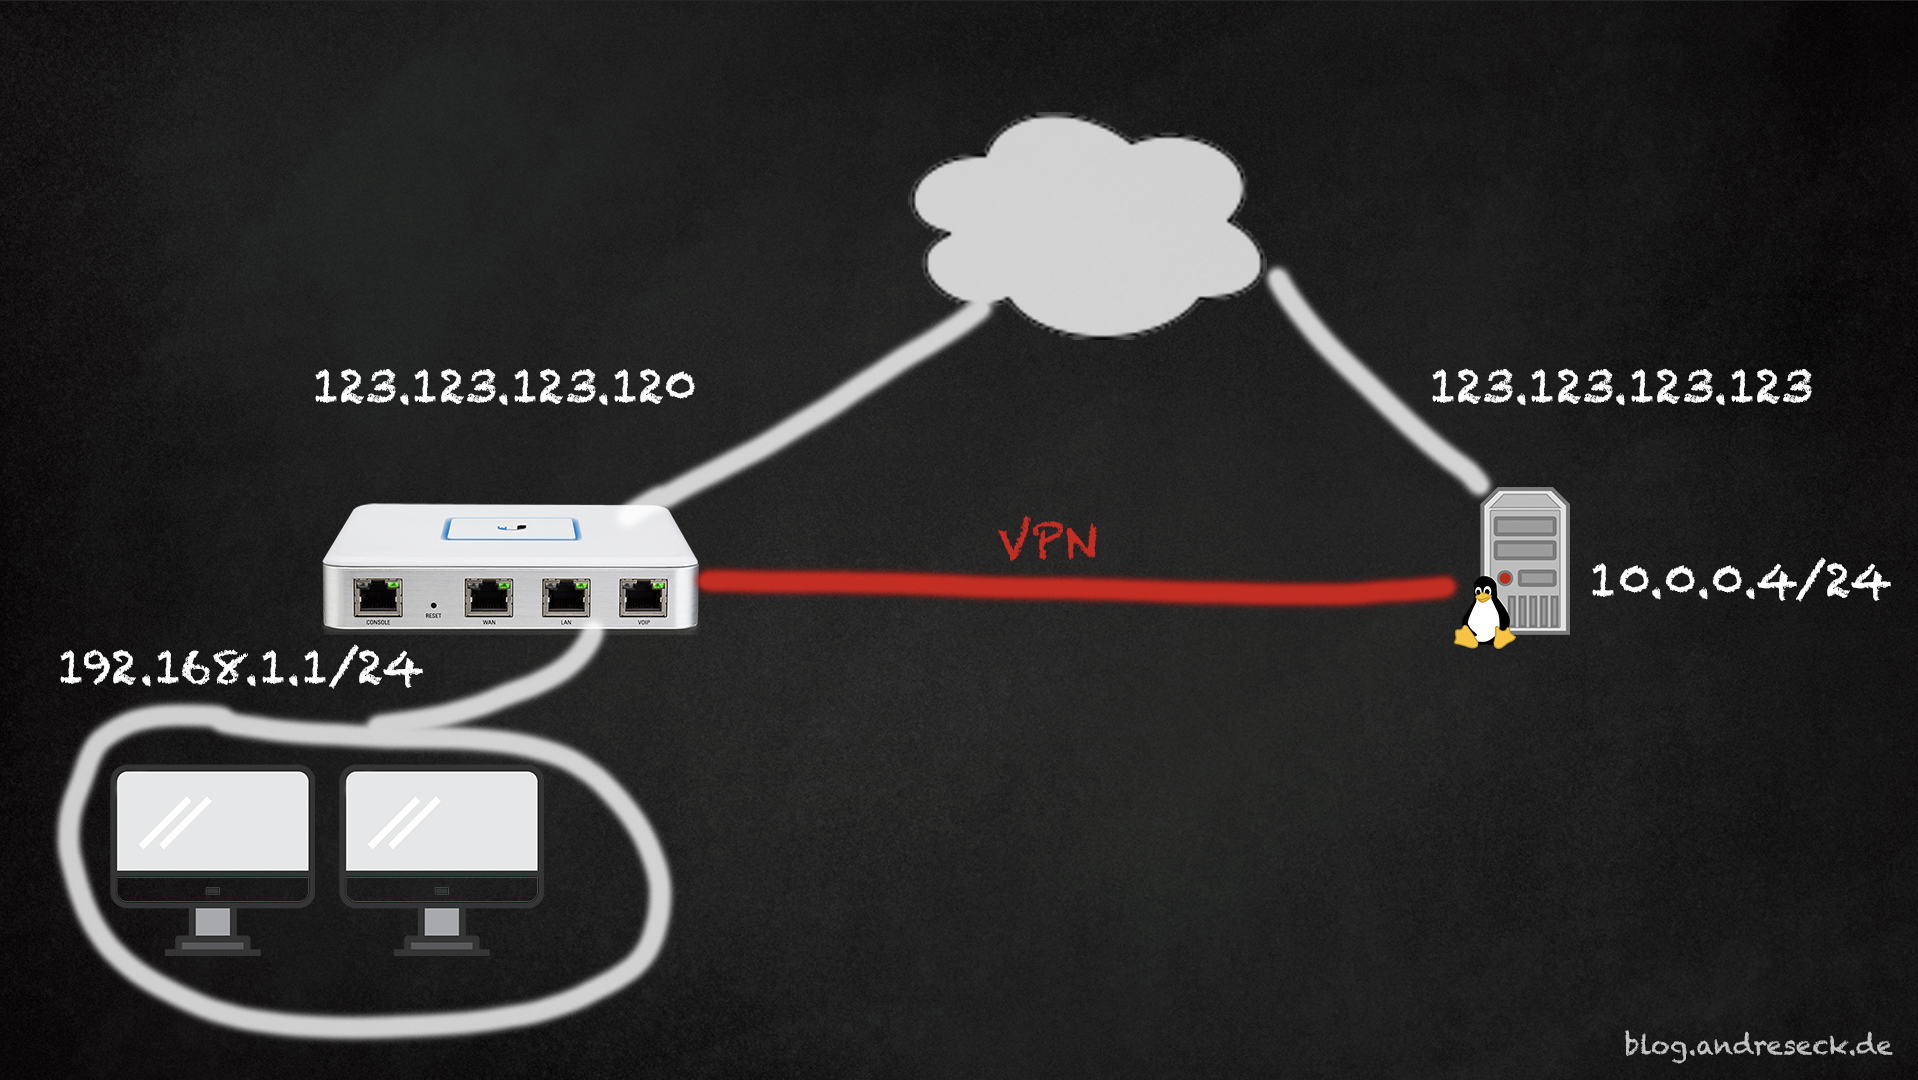 Ферма мобильных прокси. Облачные сервисы использование VPN. VPN s2s. Логотип Ubiquiti на коробке cdr.